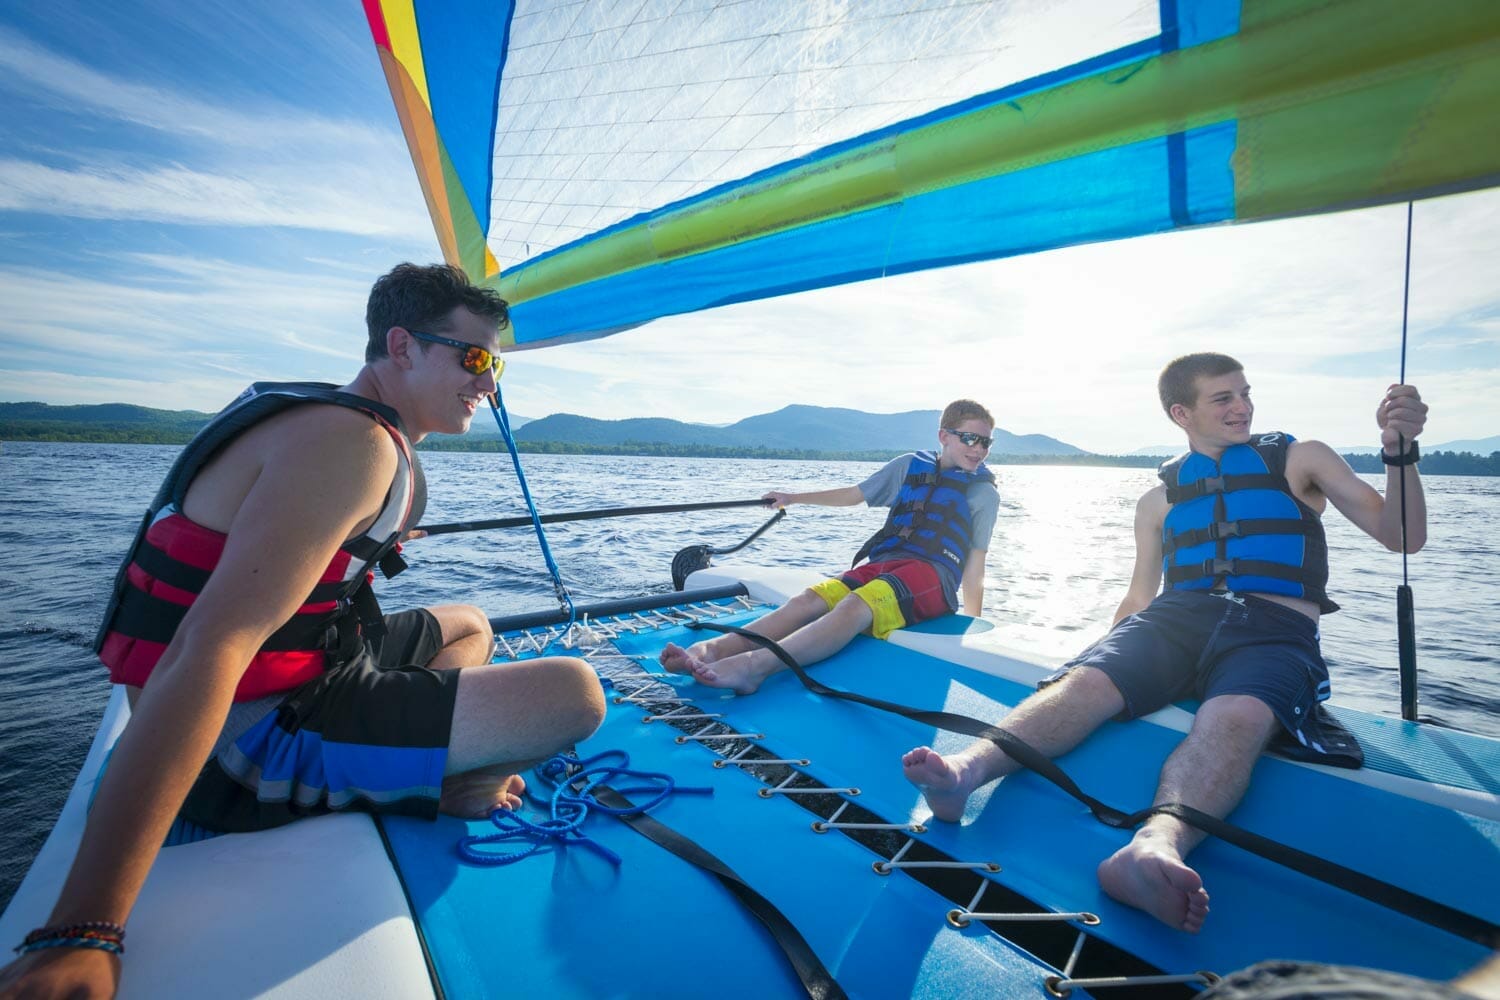 Boys sailing at USA summer camp